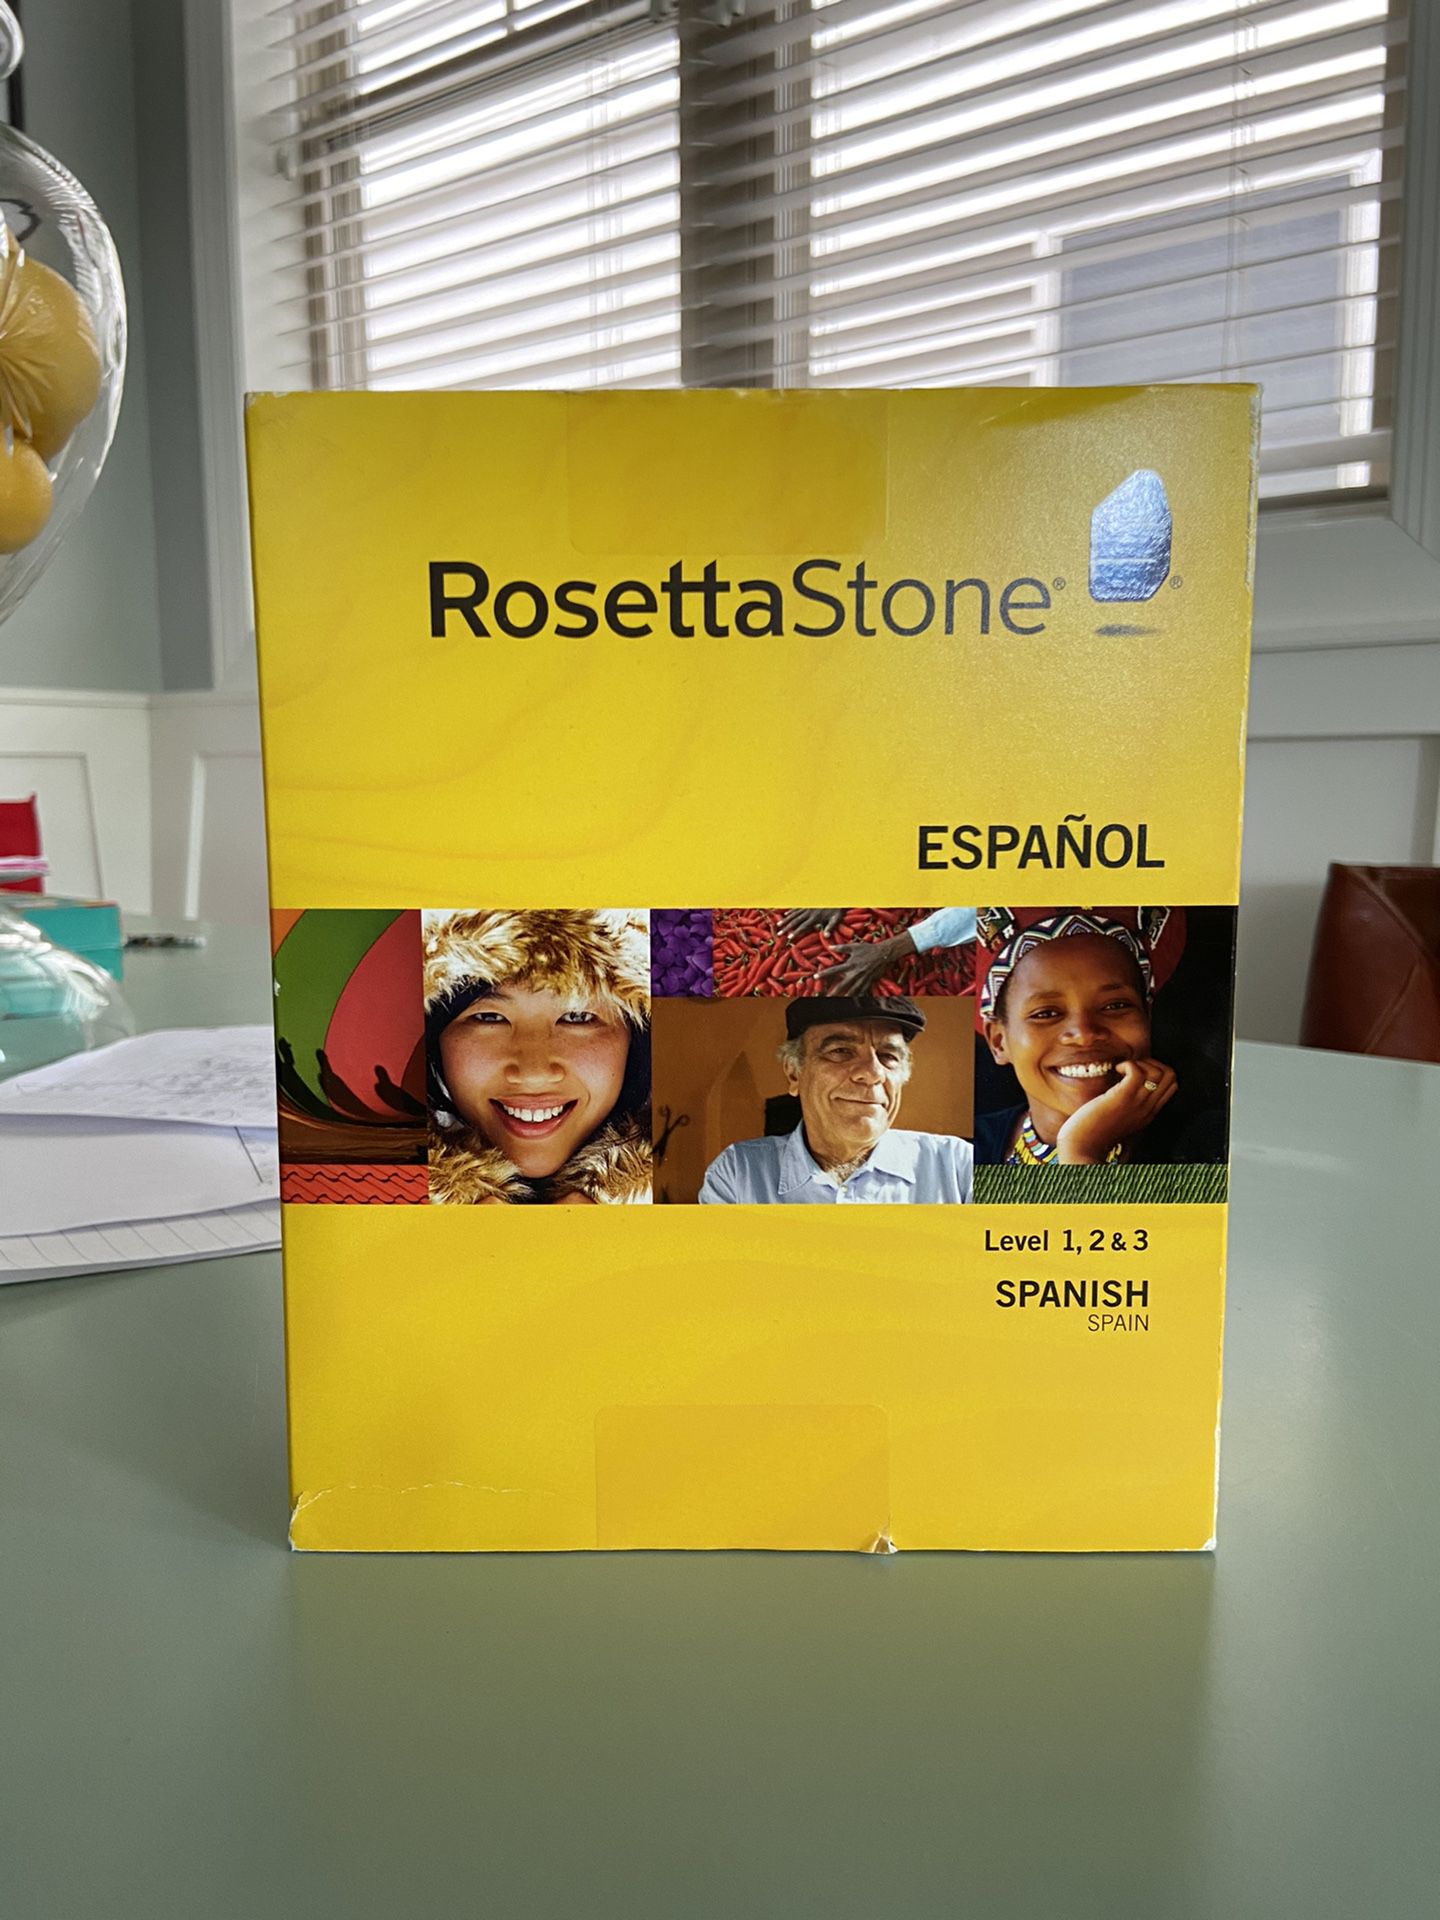 Rosetta Stone Spanish - Levels 1, 2, and 3